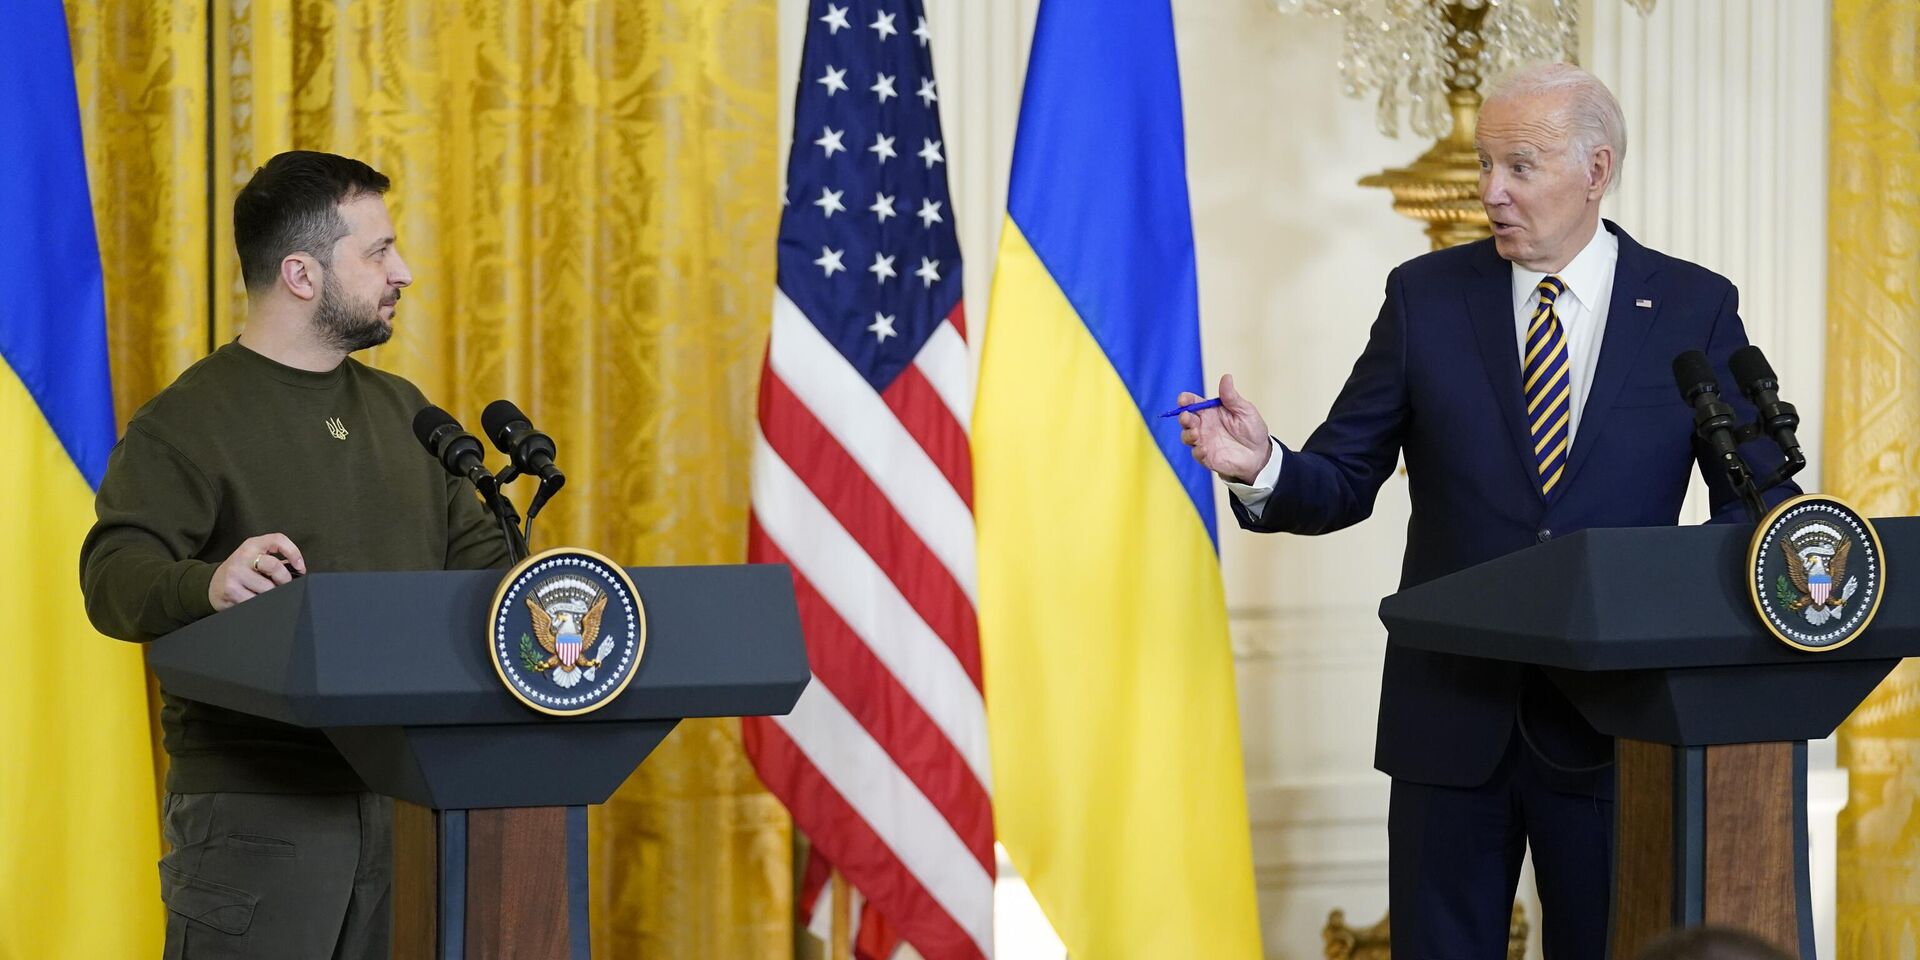 Президент США Джо Байден и президент Украины Владимир Зеленский во время пресс-конференции в Белом доме в Вашингтоне. 21 декабря 2022 года - ИноСМИ, 1920, 28.12.2022